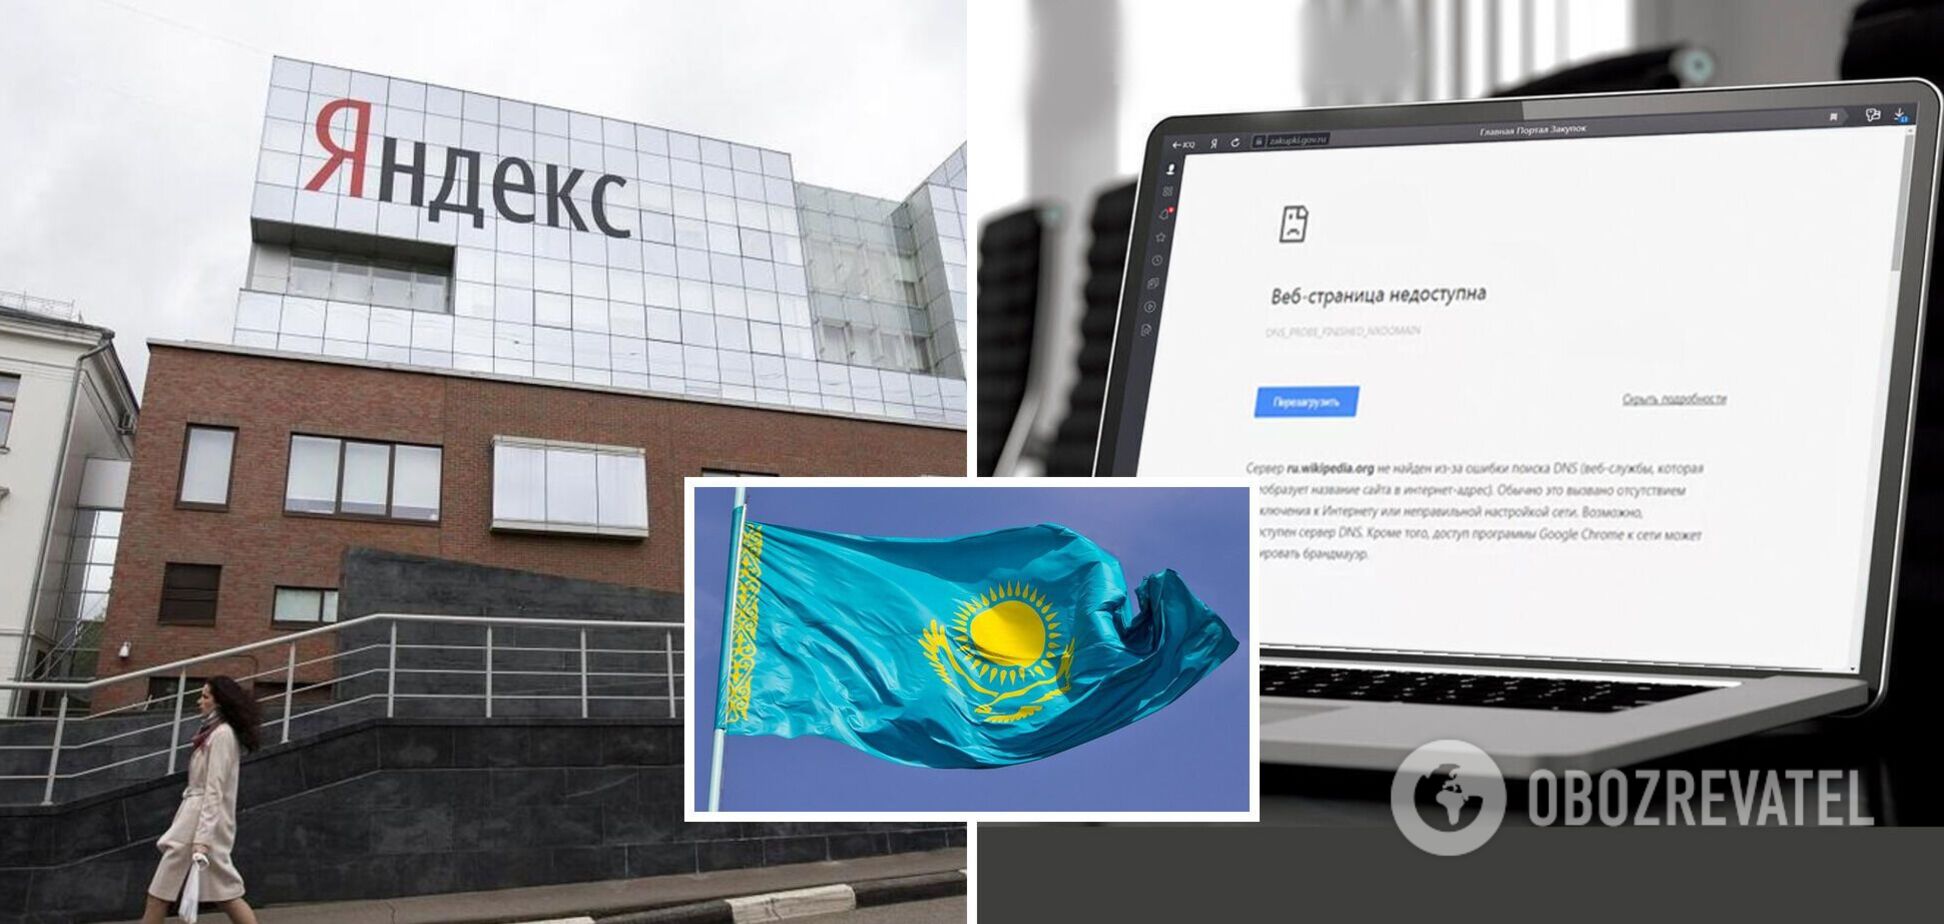 В Казахстане приостановили работу 'Яндекса' из-за передачи персональных данных в Россию